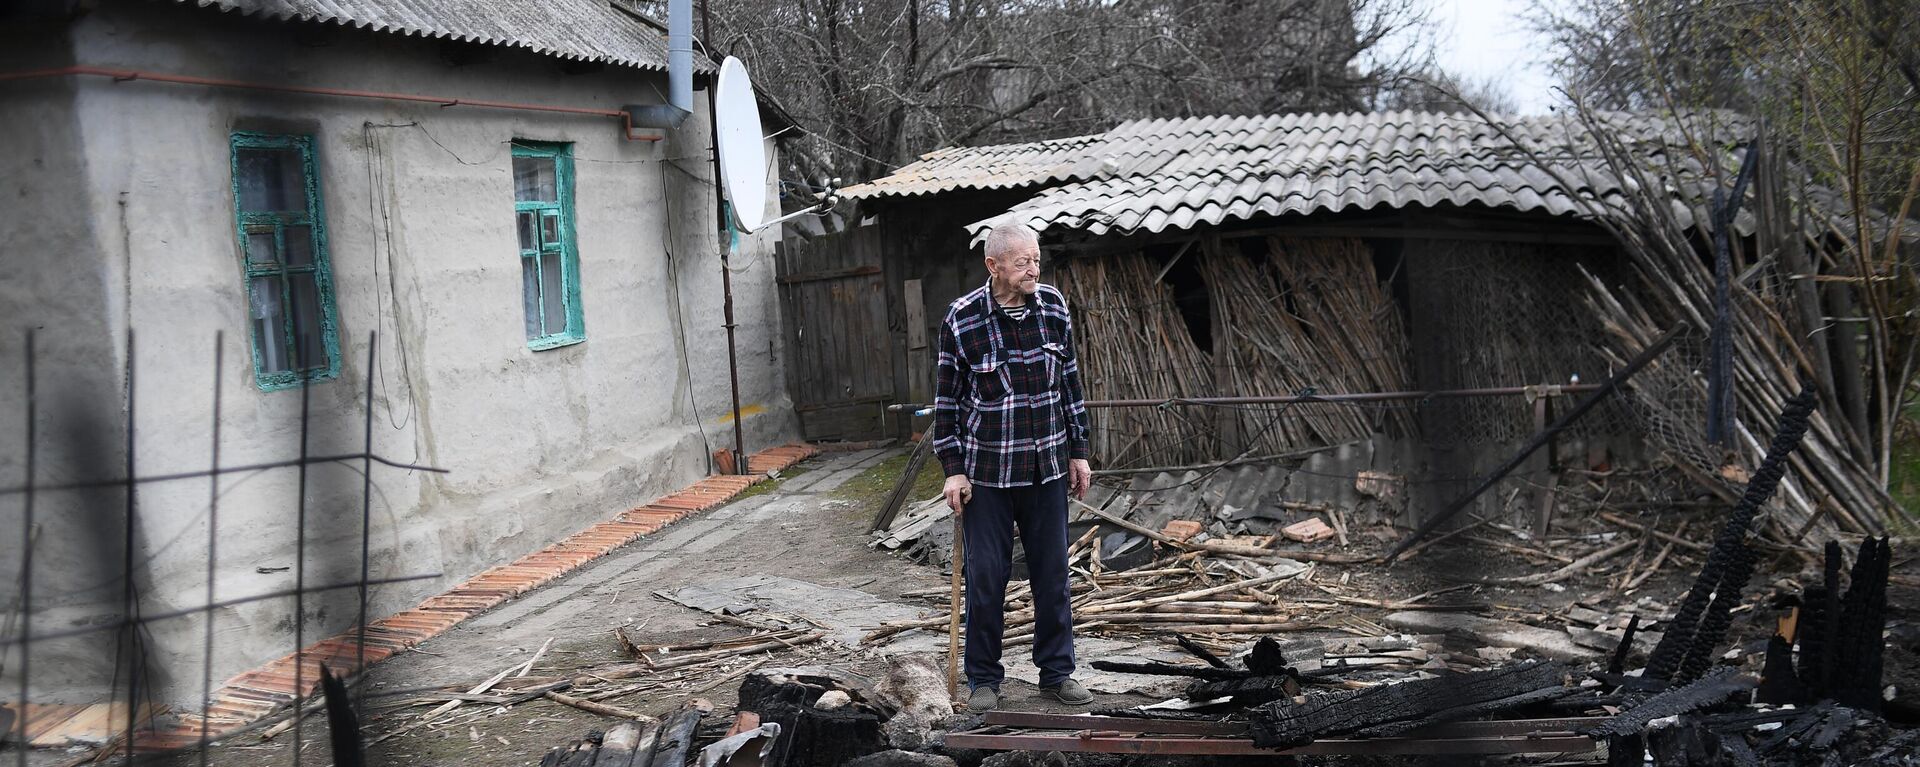 عواقب قصف قوات الجيش الأوكراني قرية فرونزي في جمهورية لوغانسك الشعبية، 12 أبريل 2022 - سبوتنيك عربي, 1920, 25.09.2022